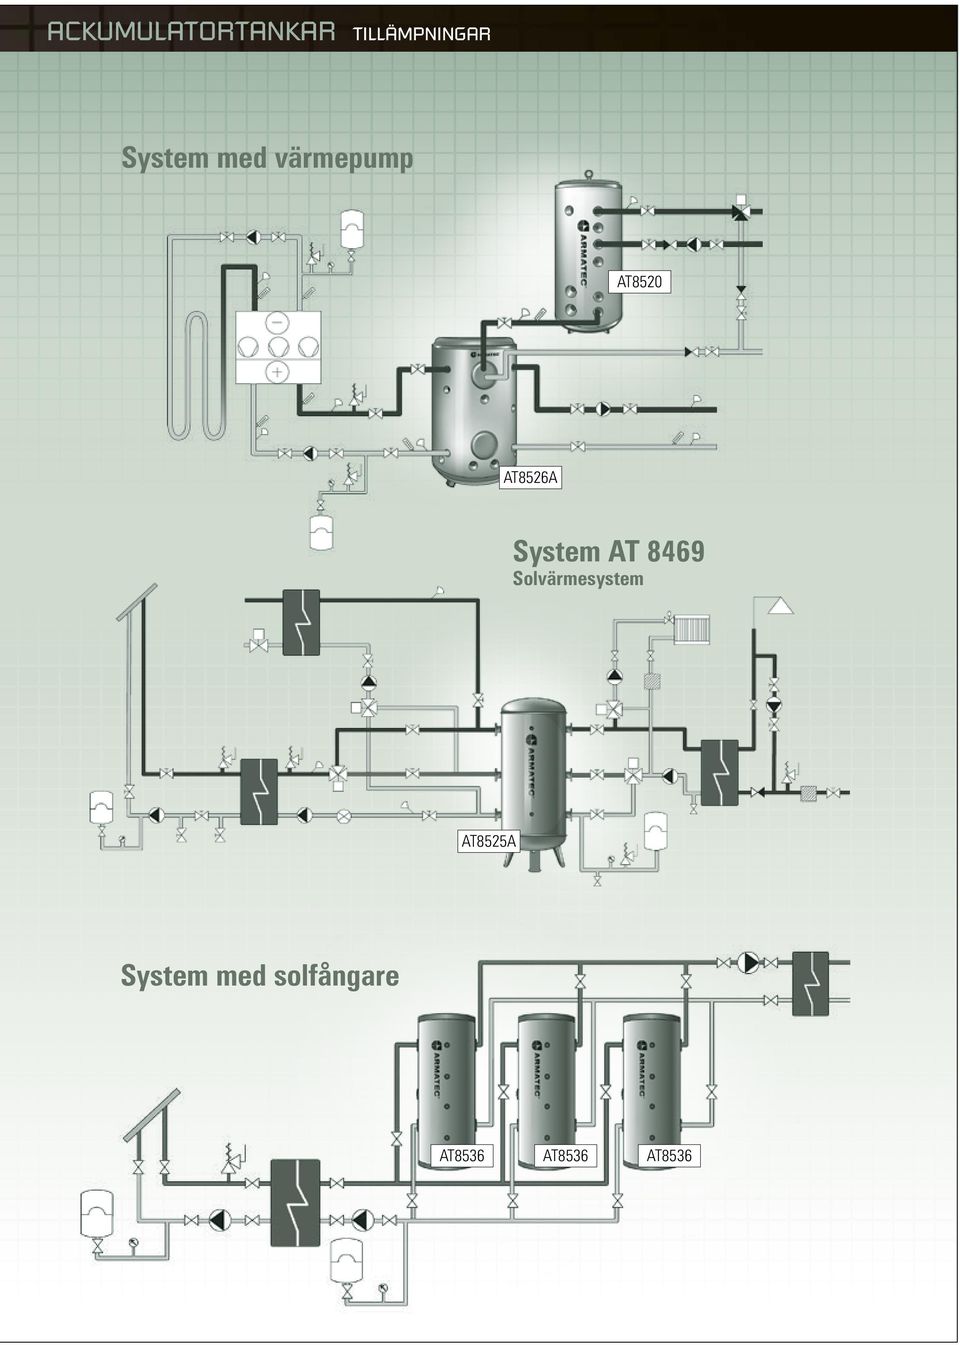 System AT 8469 Solvärmesystem